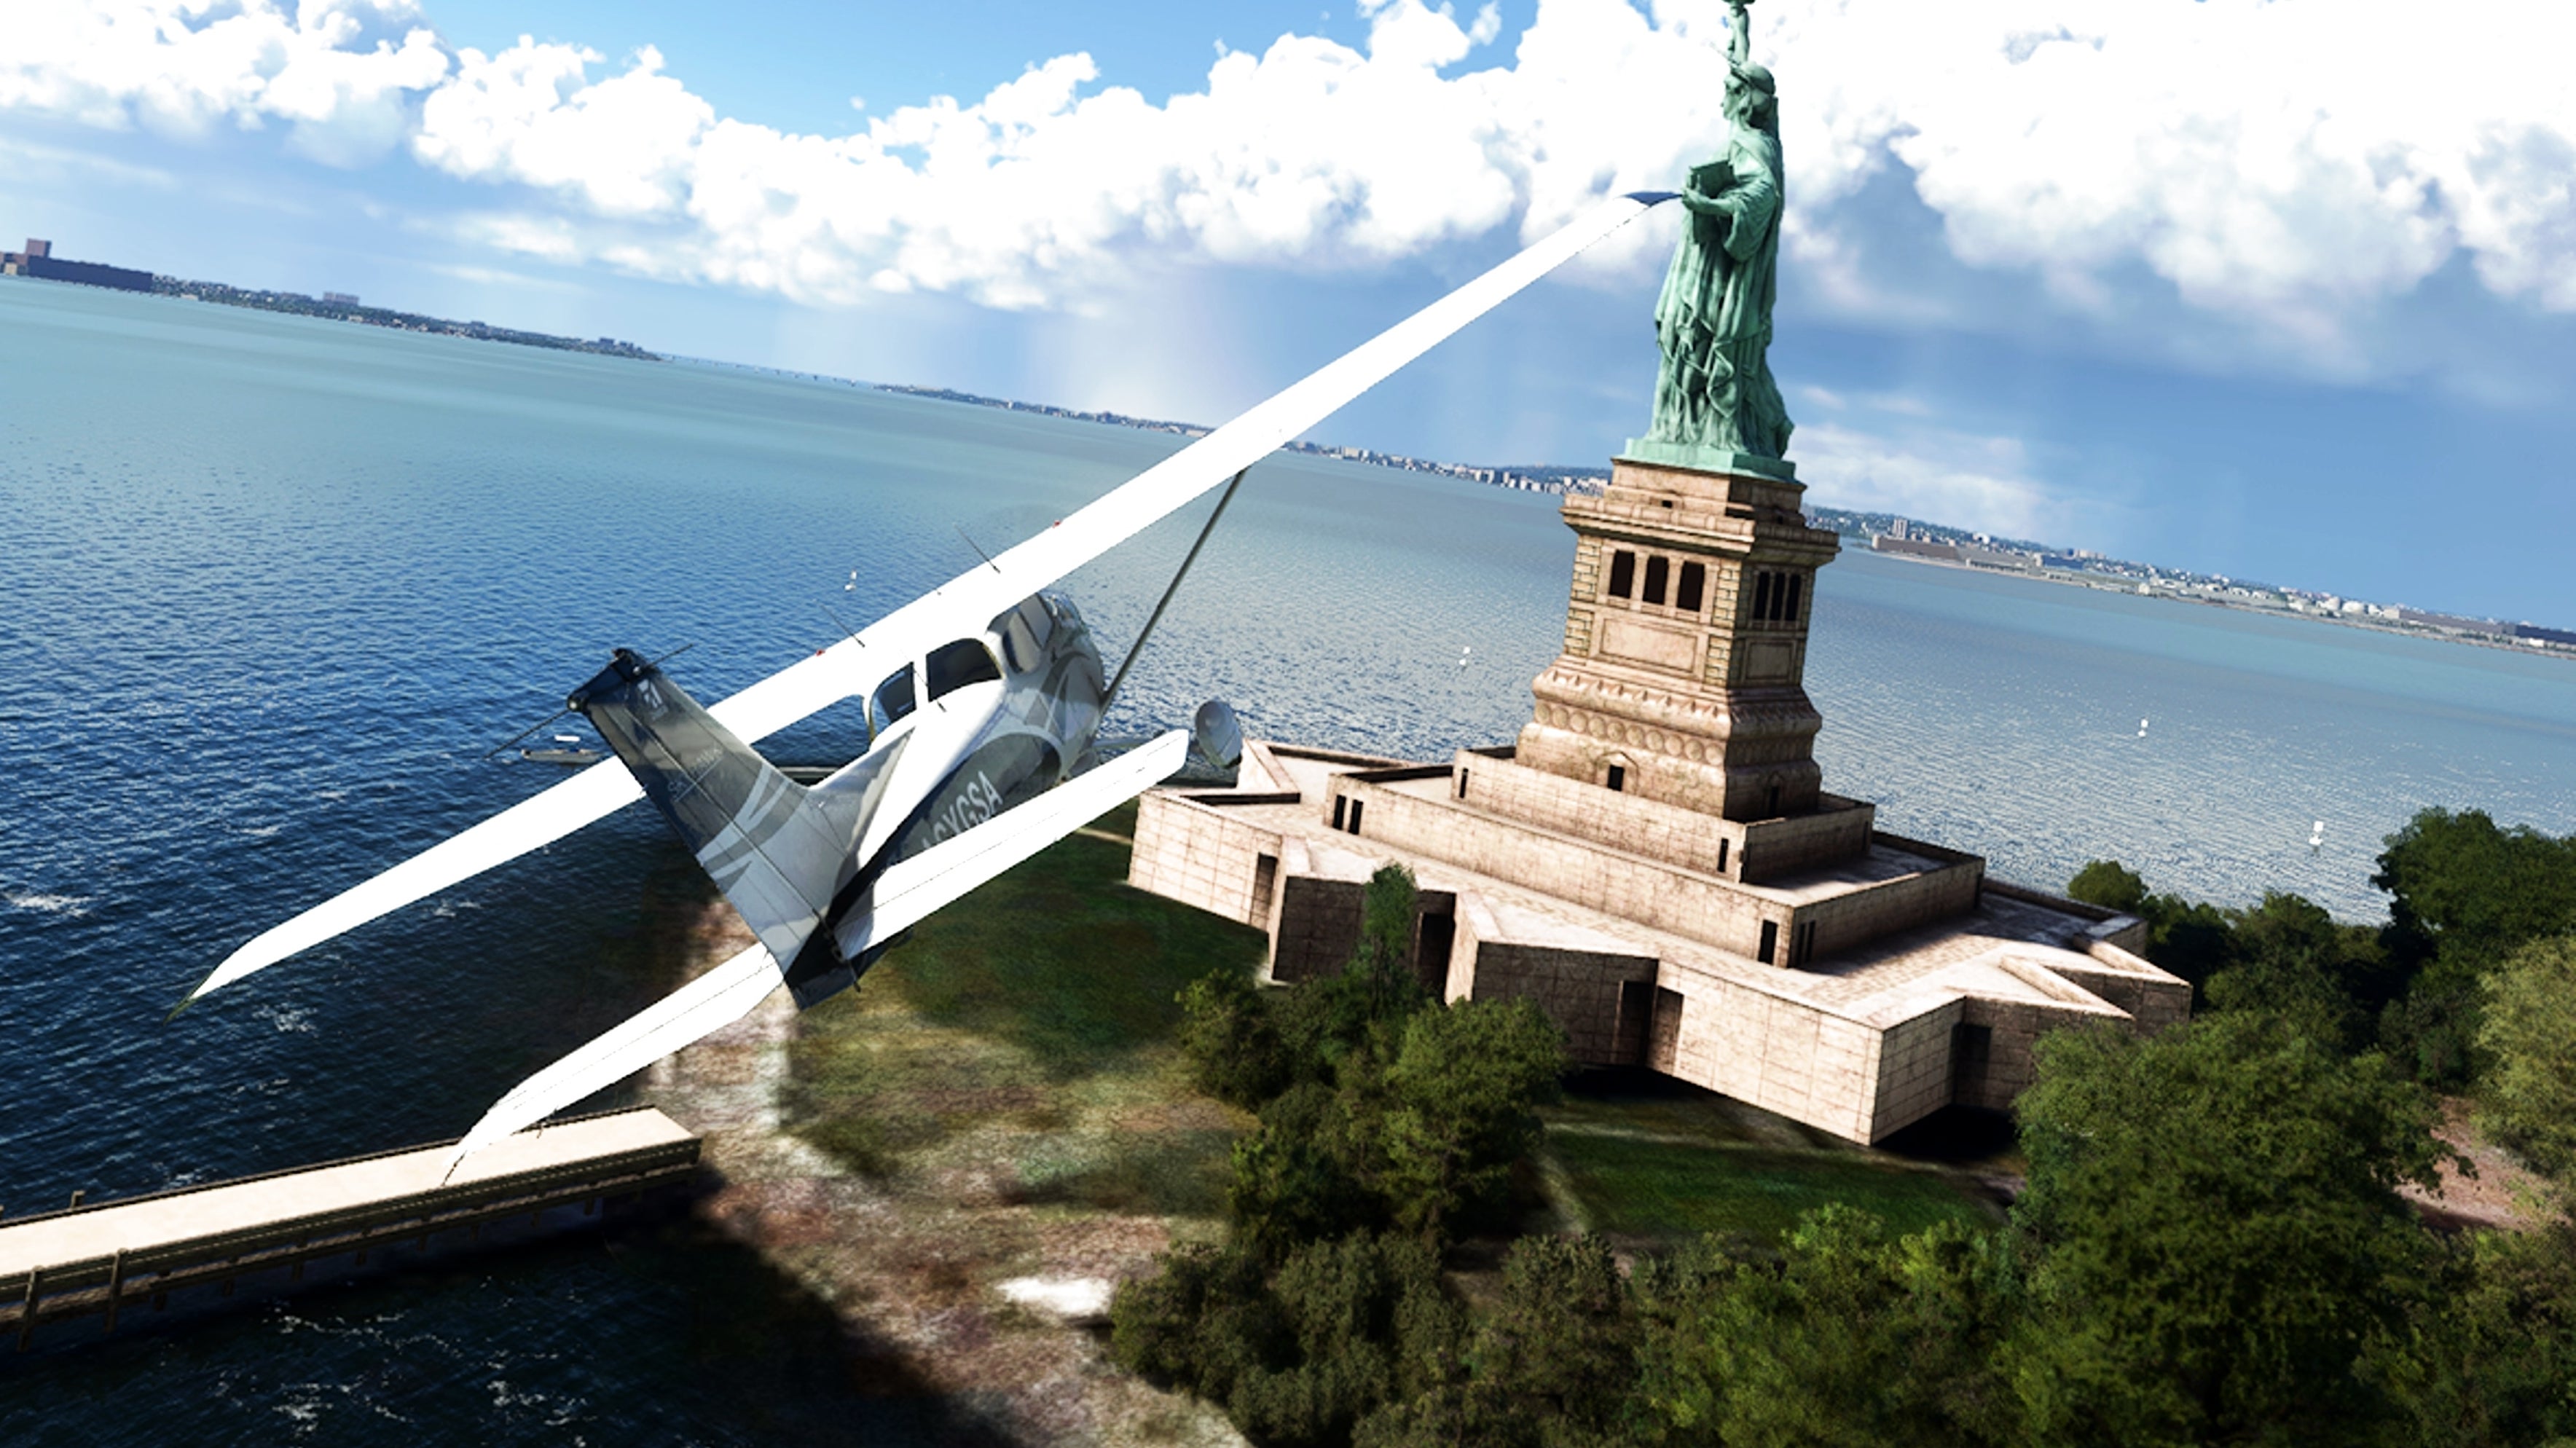 Bilder zu Microsoft Flight Simulator - Auch auf der Xbox ein Meilenstein der Softwaregeschichte